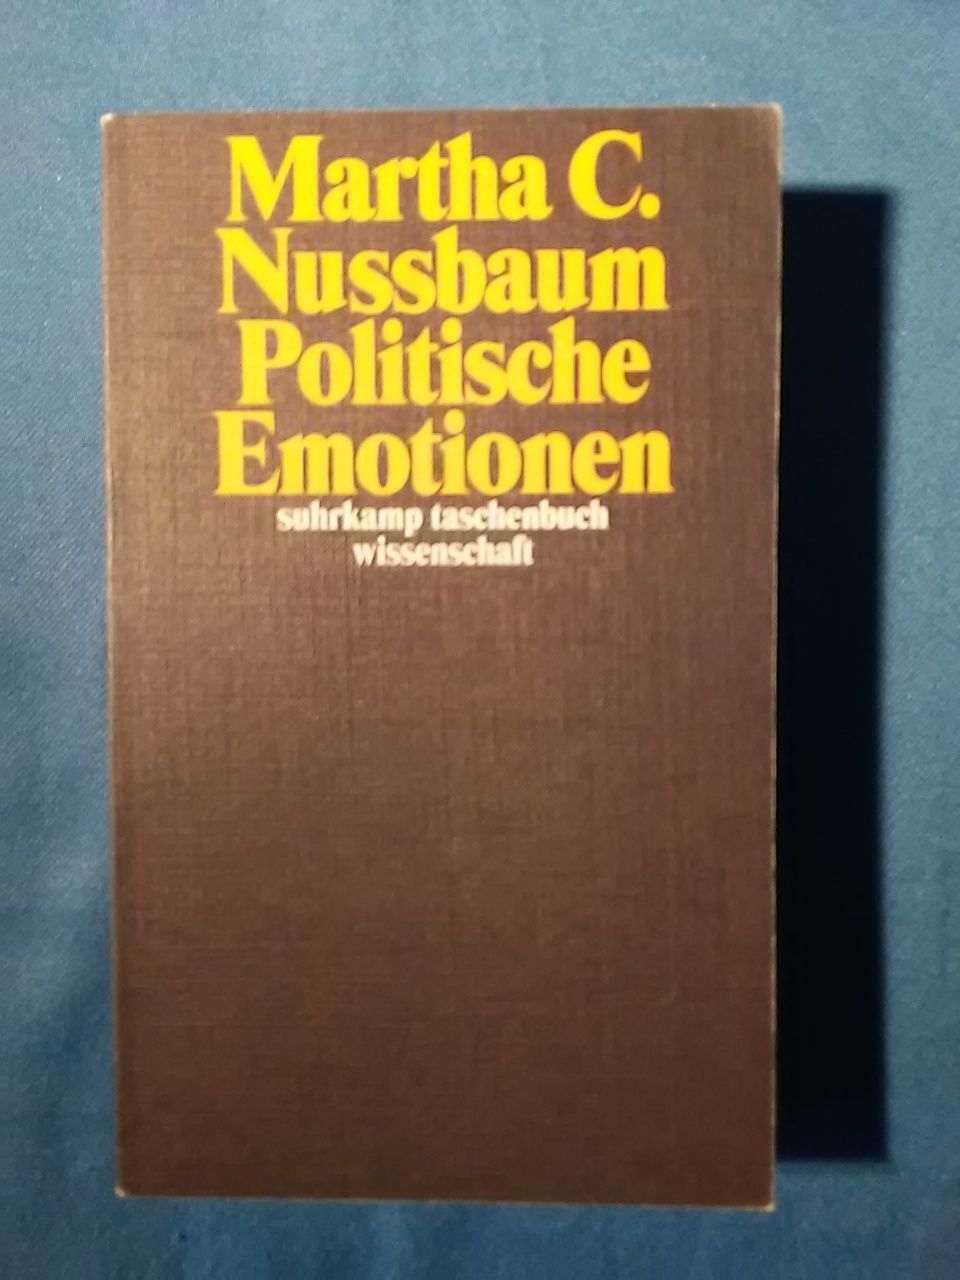 Politische Emotionen : Warum Liebe für Gerechtigkeit wichtig ist. Martha C. Nussbaum ; aus dem Amerikanischen von Ilse Utz / Suhrkamp-Taschenbuch Wissenschaft ; 2172 - Nussbaum, Martha Craven und Ilse. Utz